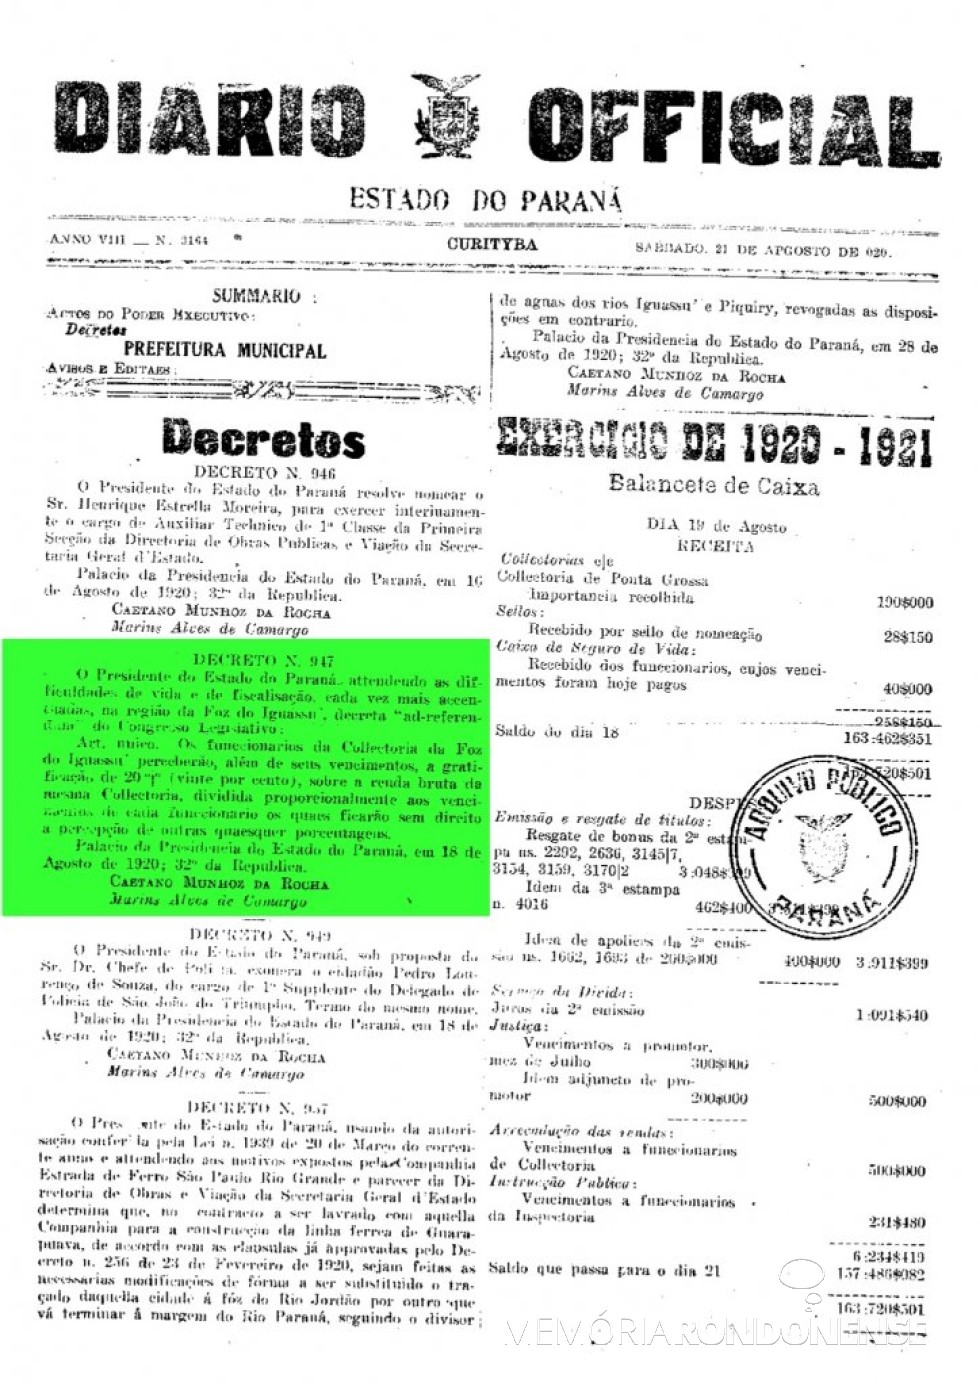 || Publicação do Decreto nº 947, de agosto de 1920, que concedia vantagens aos funcionários da Coletoria Estadual de Foz do Iguaçu.
Imagem; Acervo Arquivo Público do  Paraná - FOTO 3 - 